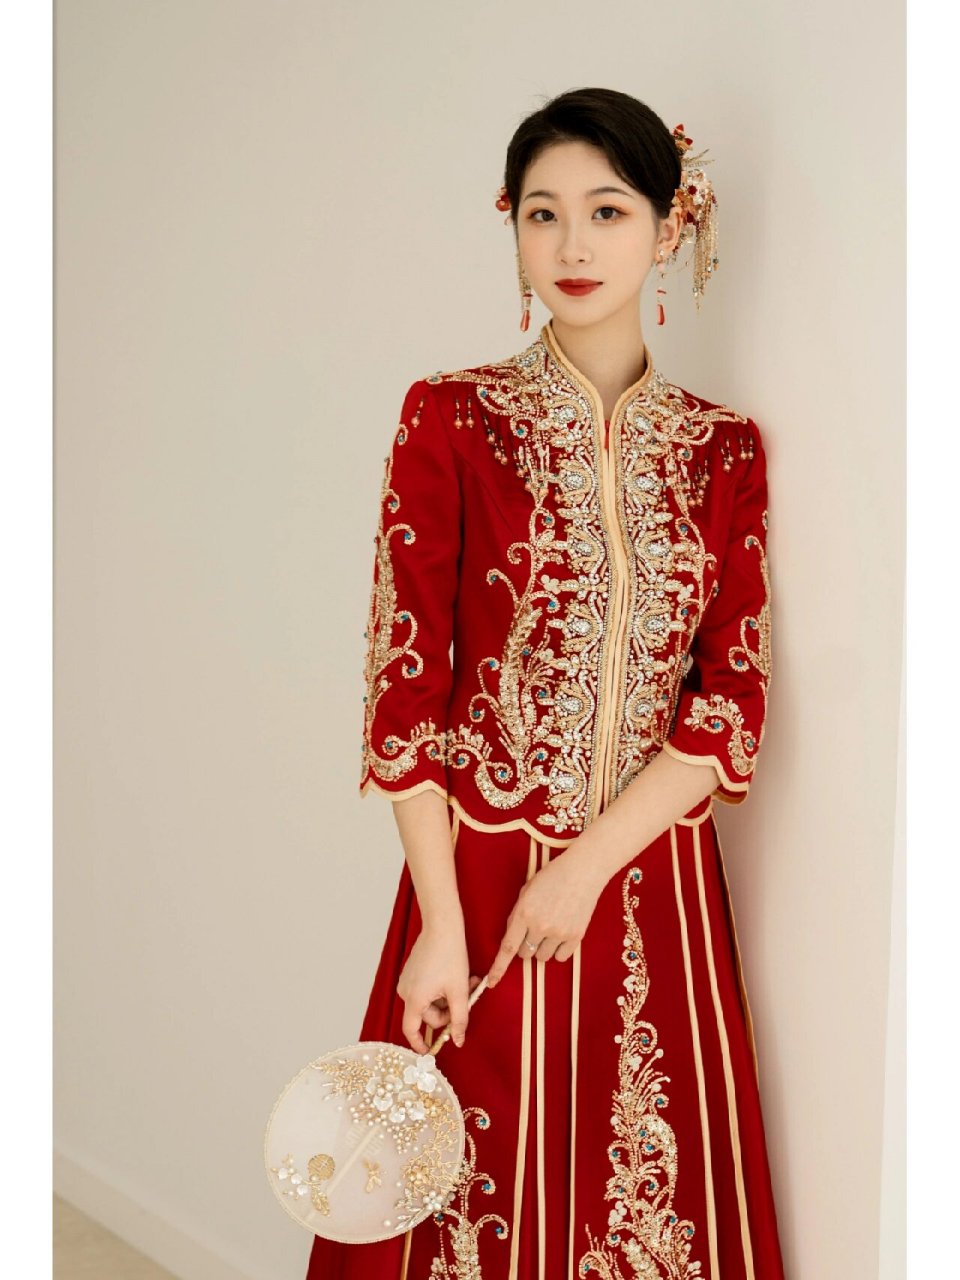 红色秀禾服大气 ,喜悦,加上发型的简单点缀,衬托的新娘明艳动人 白色